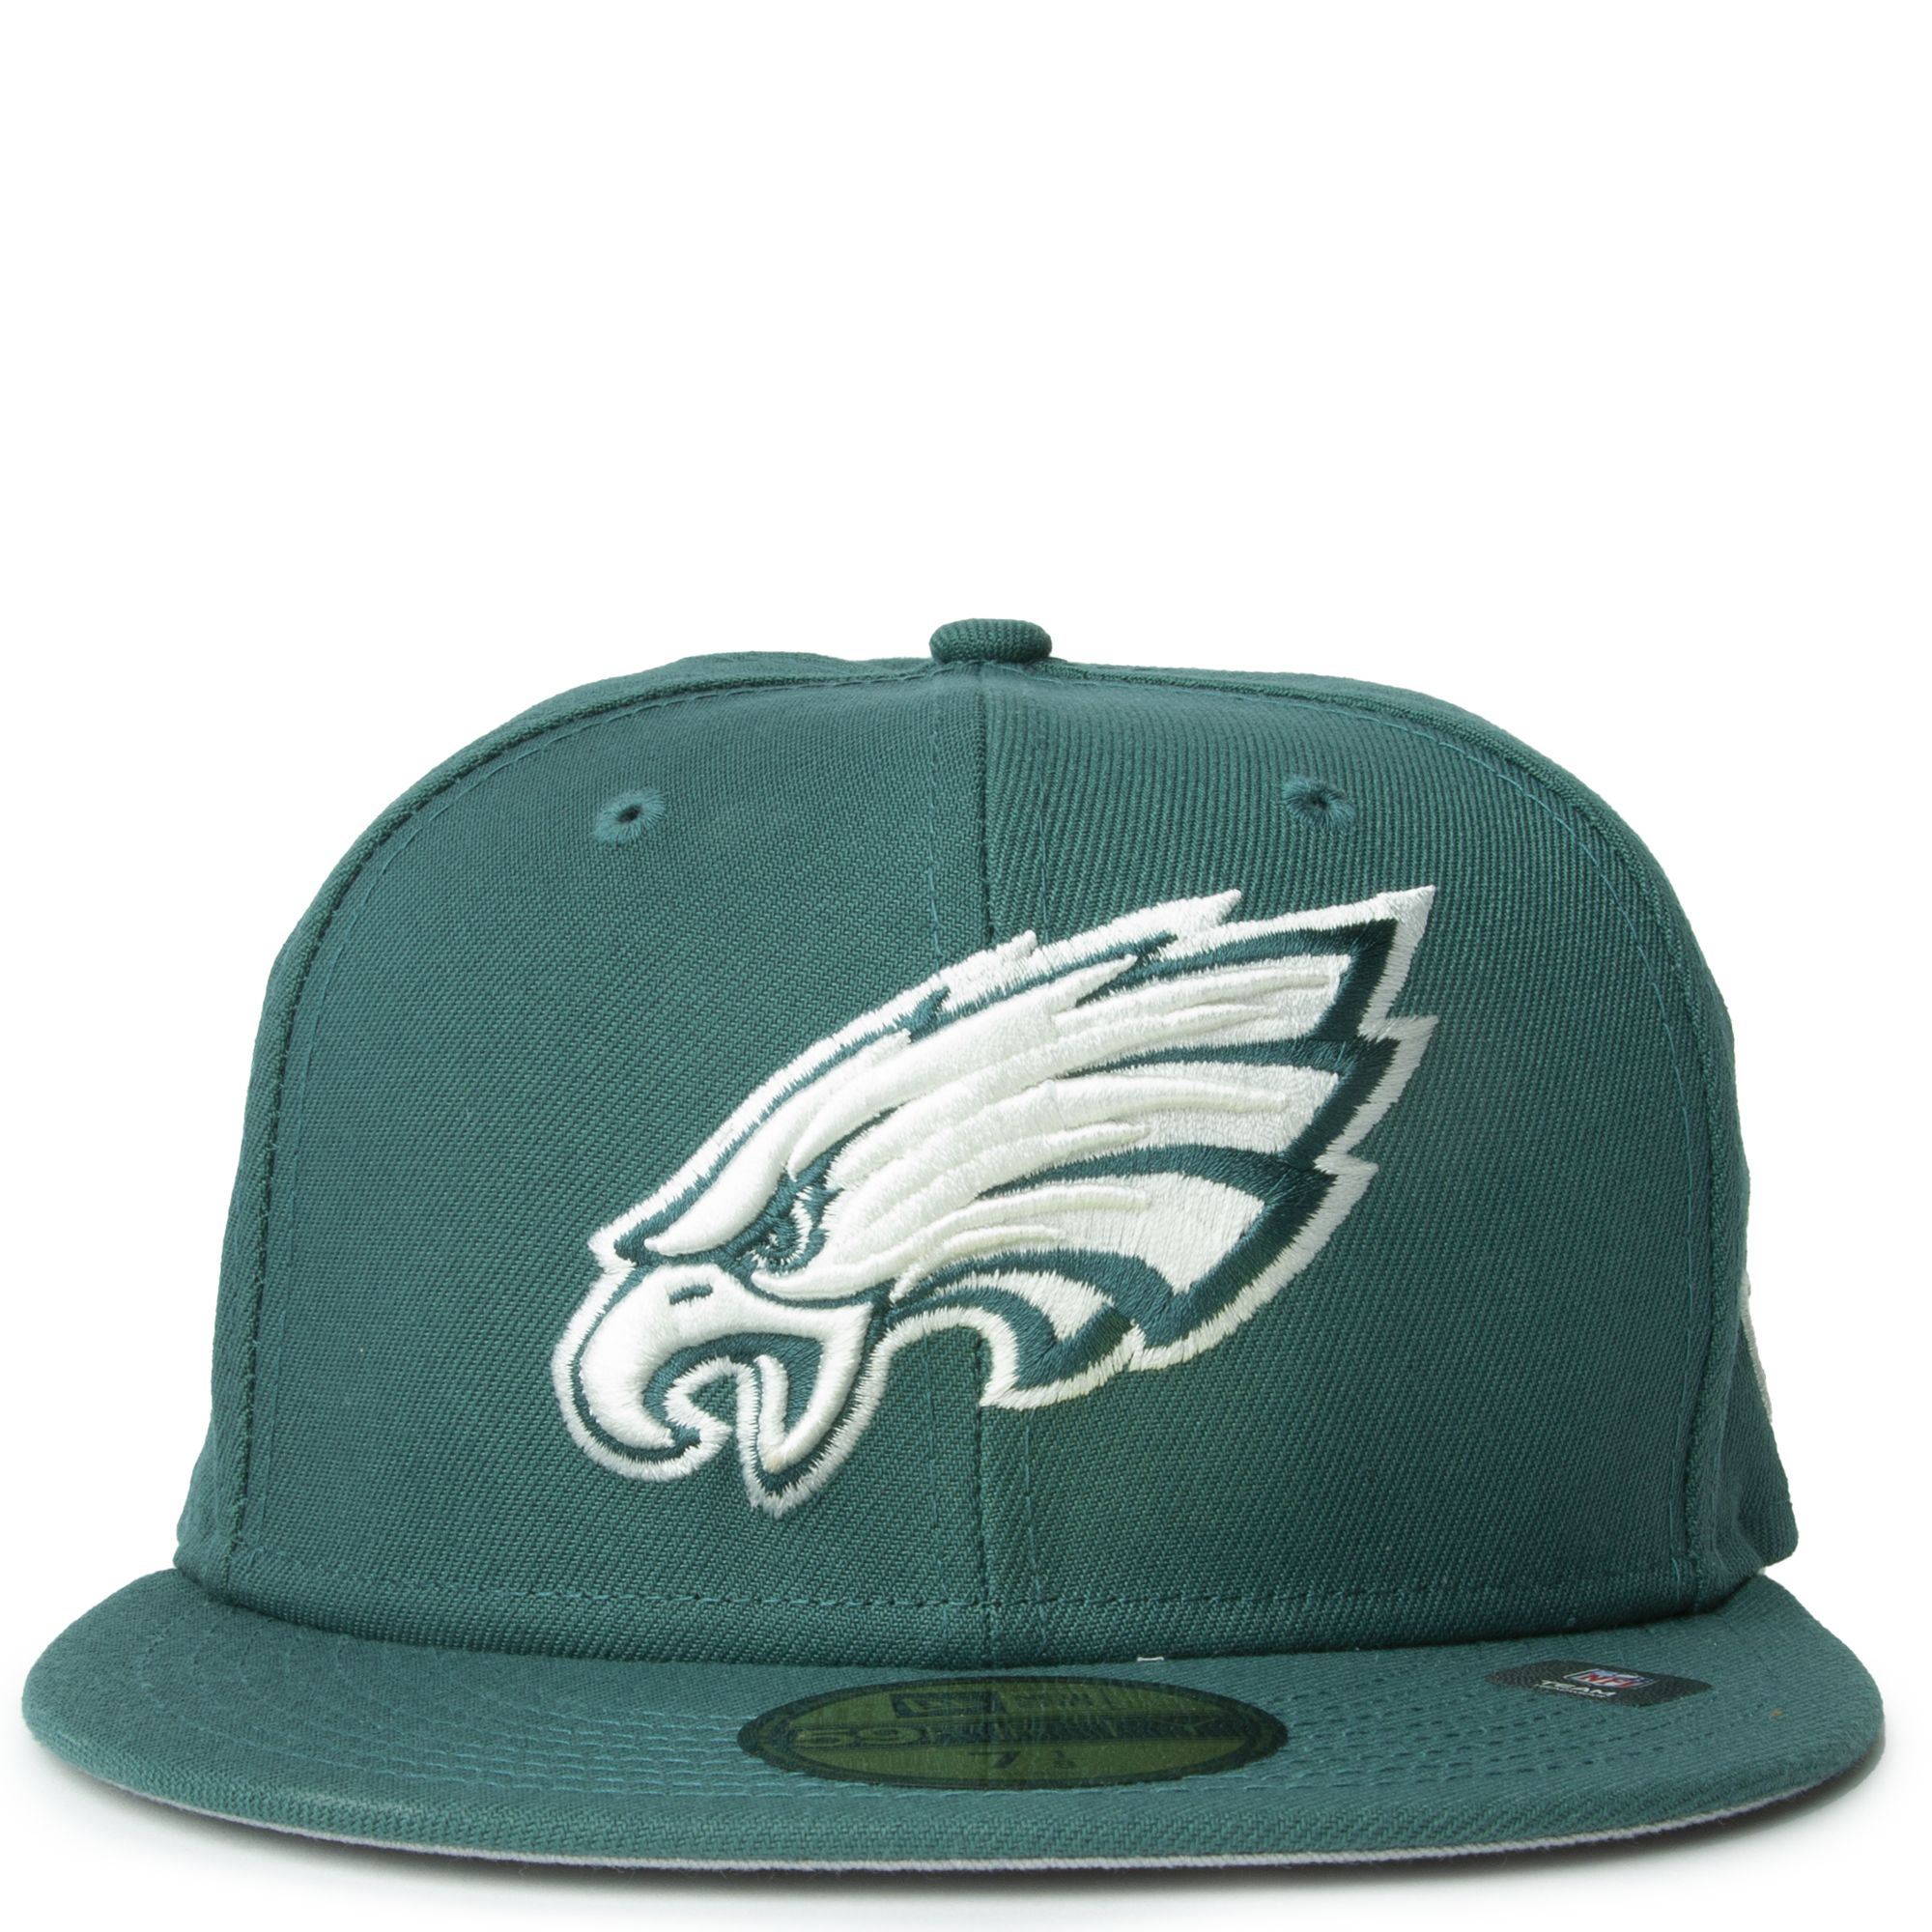 eagles new era hat